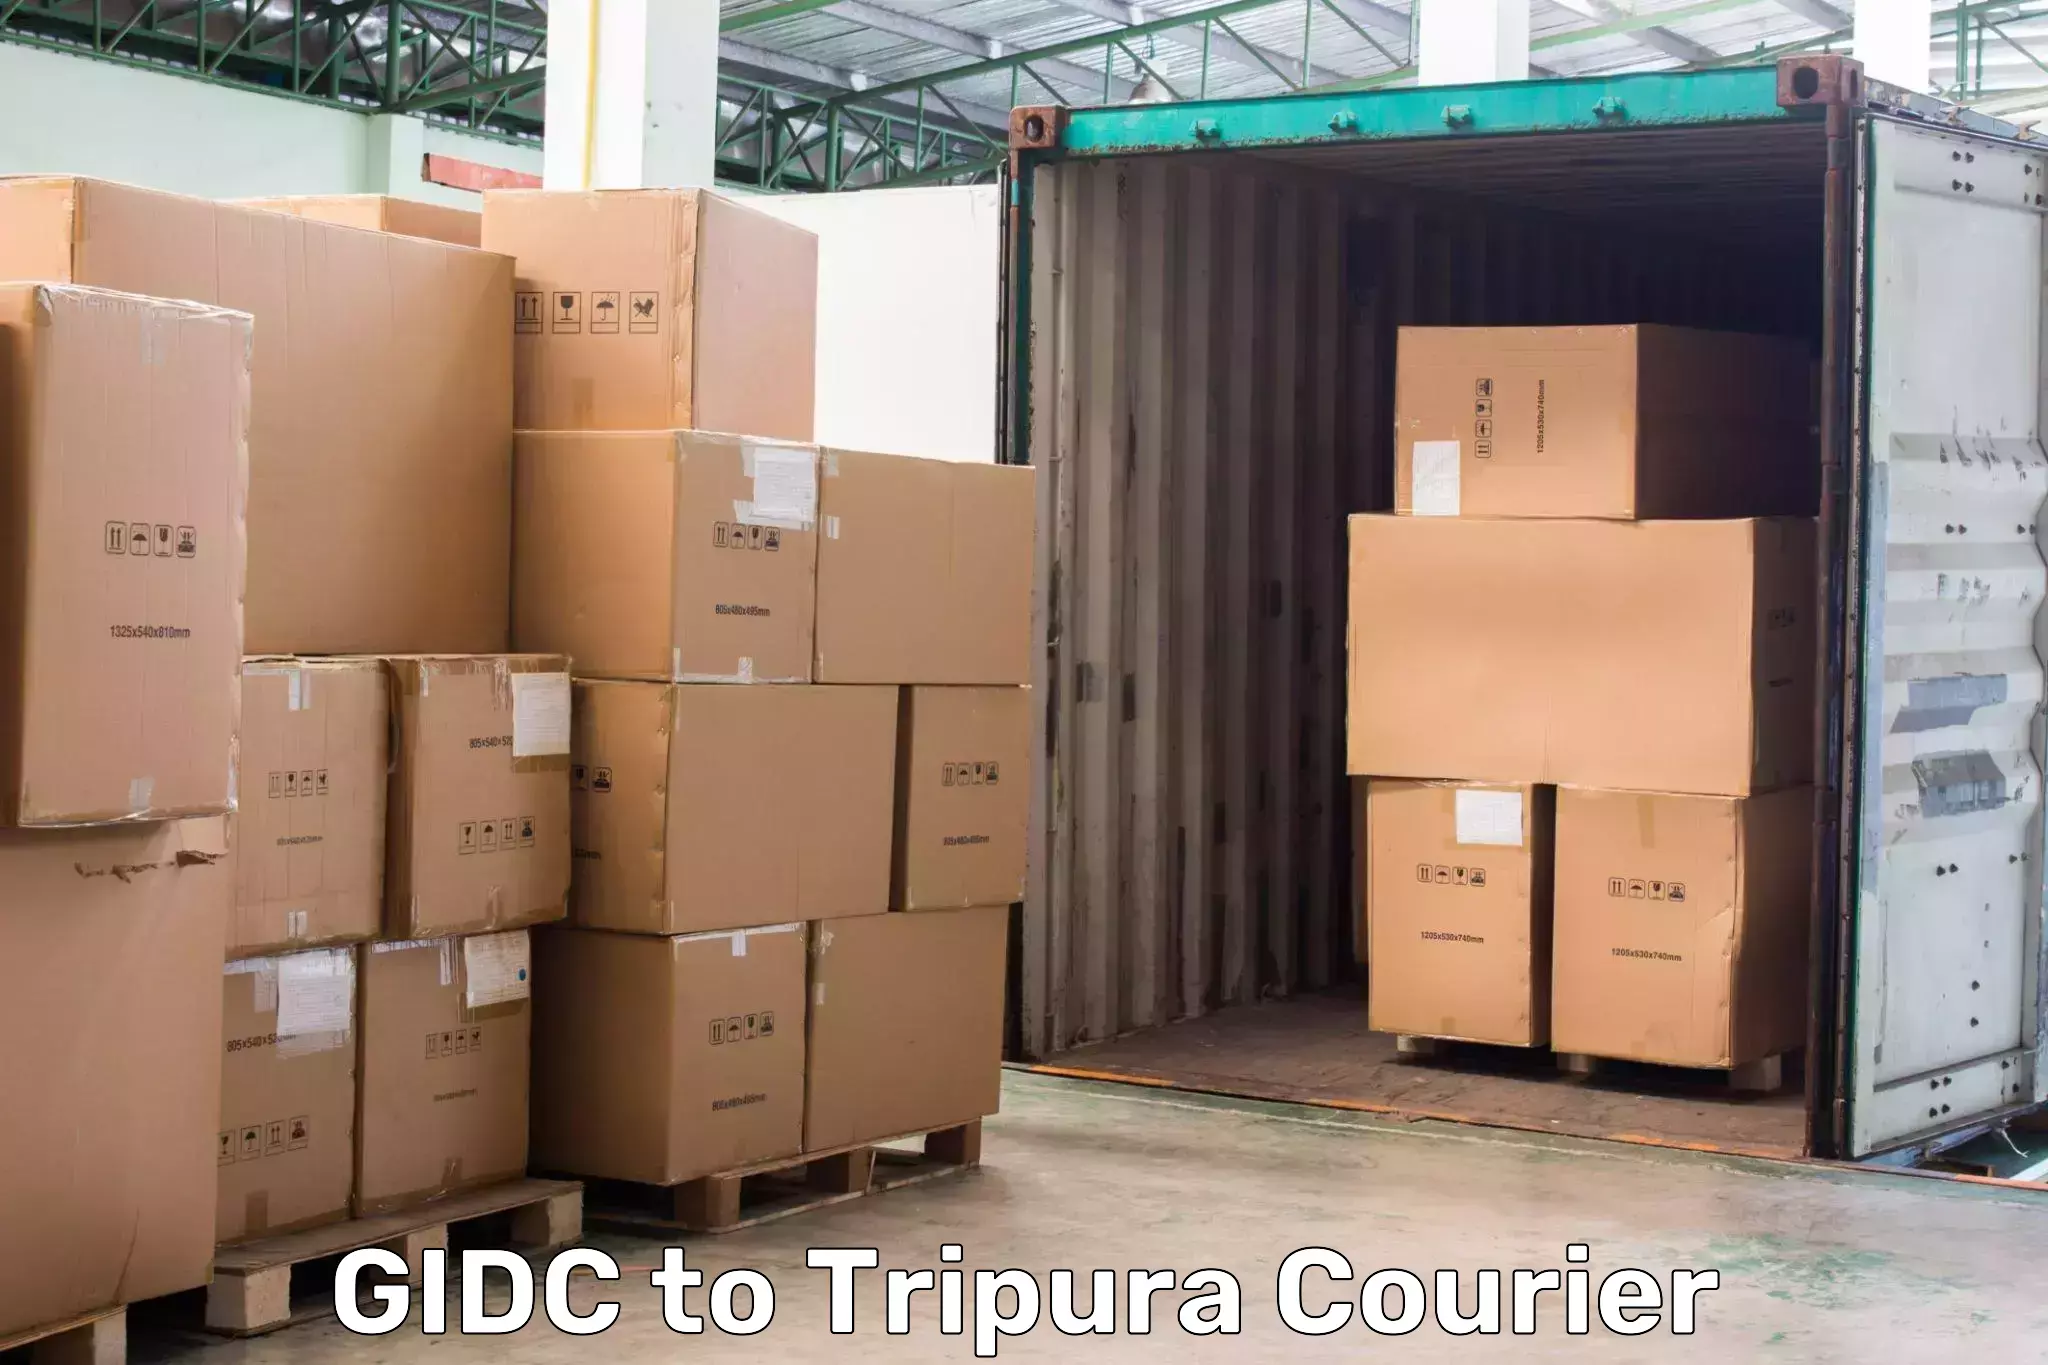 Residential courier service GIDC to Agartala